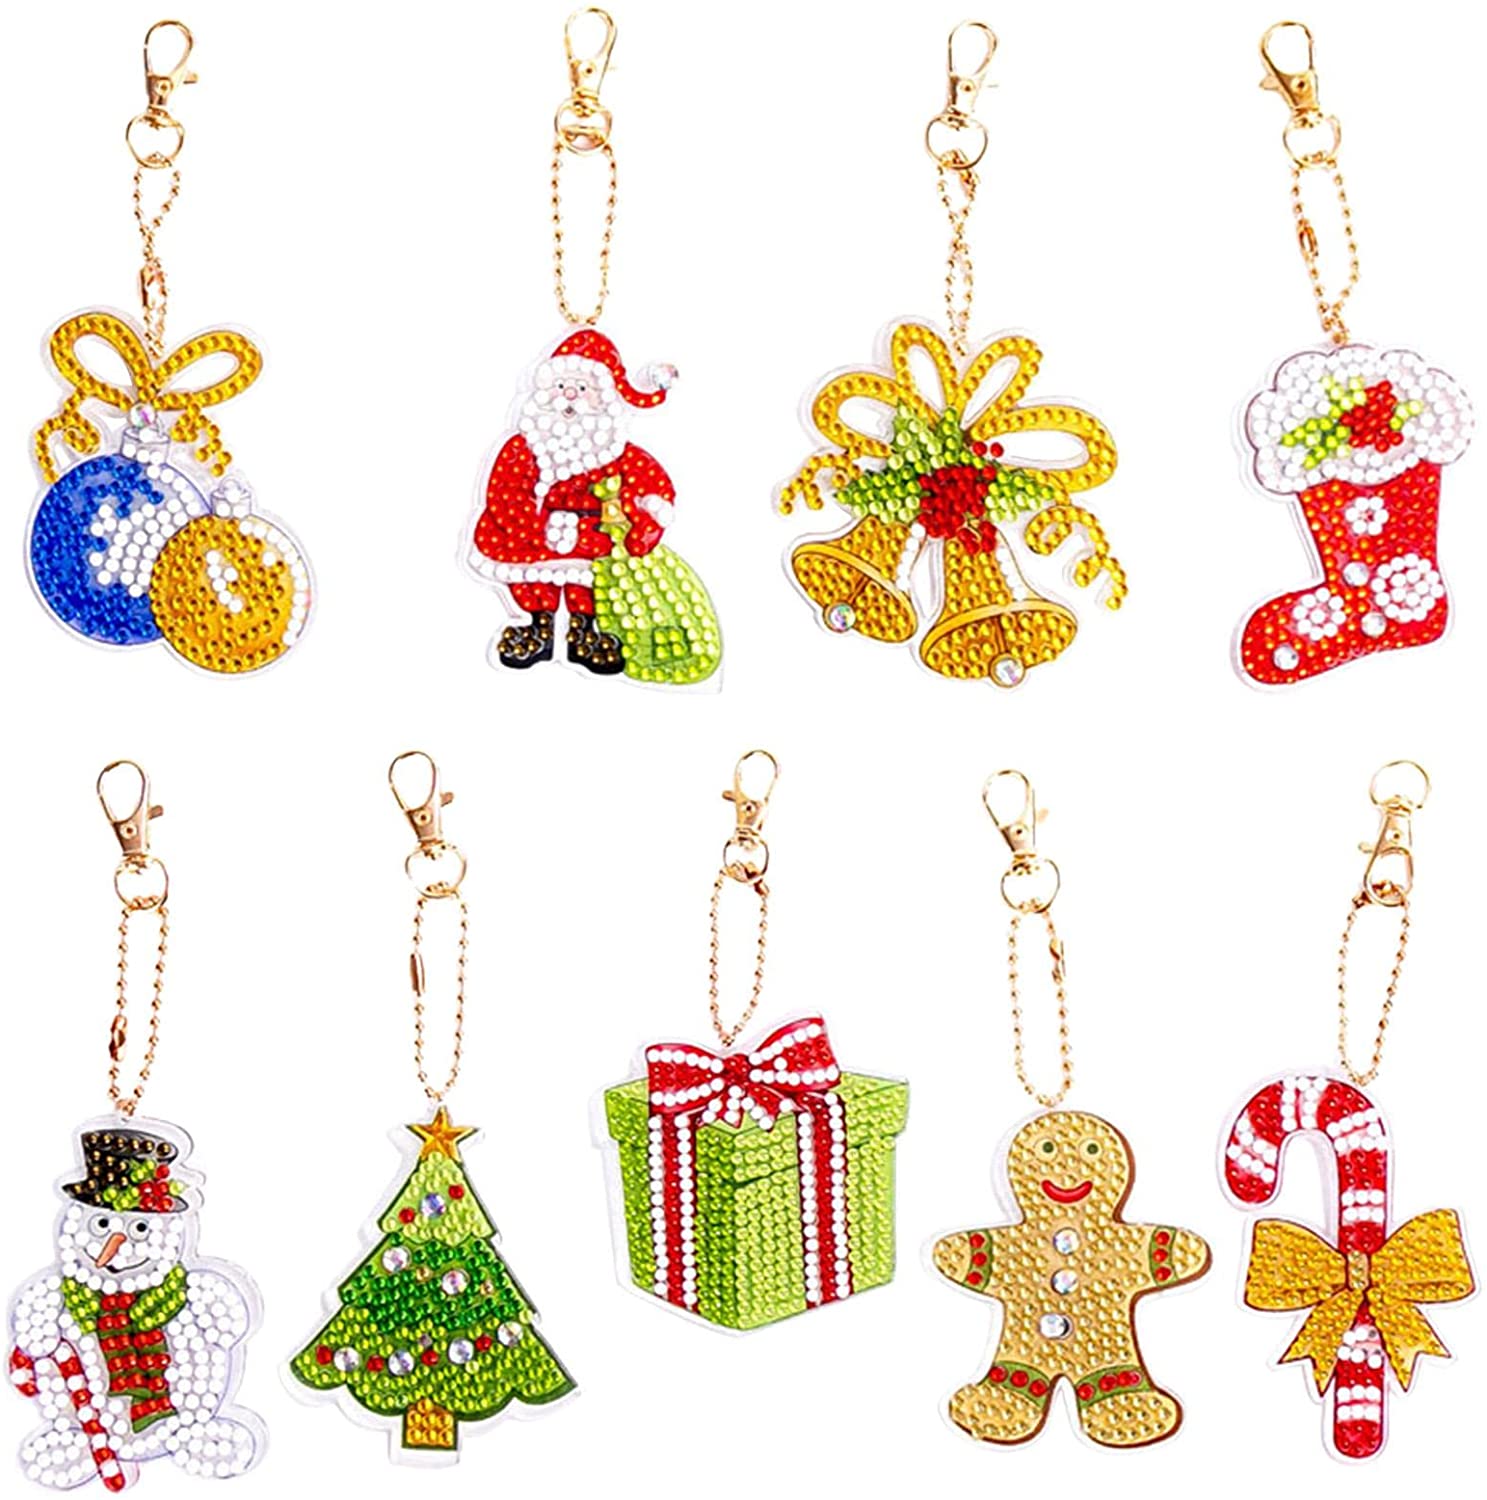 5Dクリスマスキーホルダーキット、クリスマスDIYダイヤモンドアートキット、サンタ、雪だるま、ストッキングパターンを含む9個のフルドリルキーホルダー手工芸品